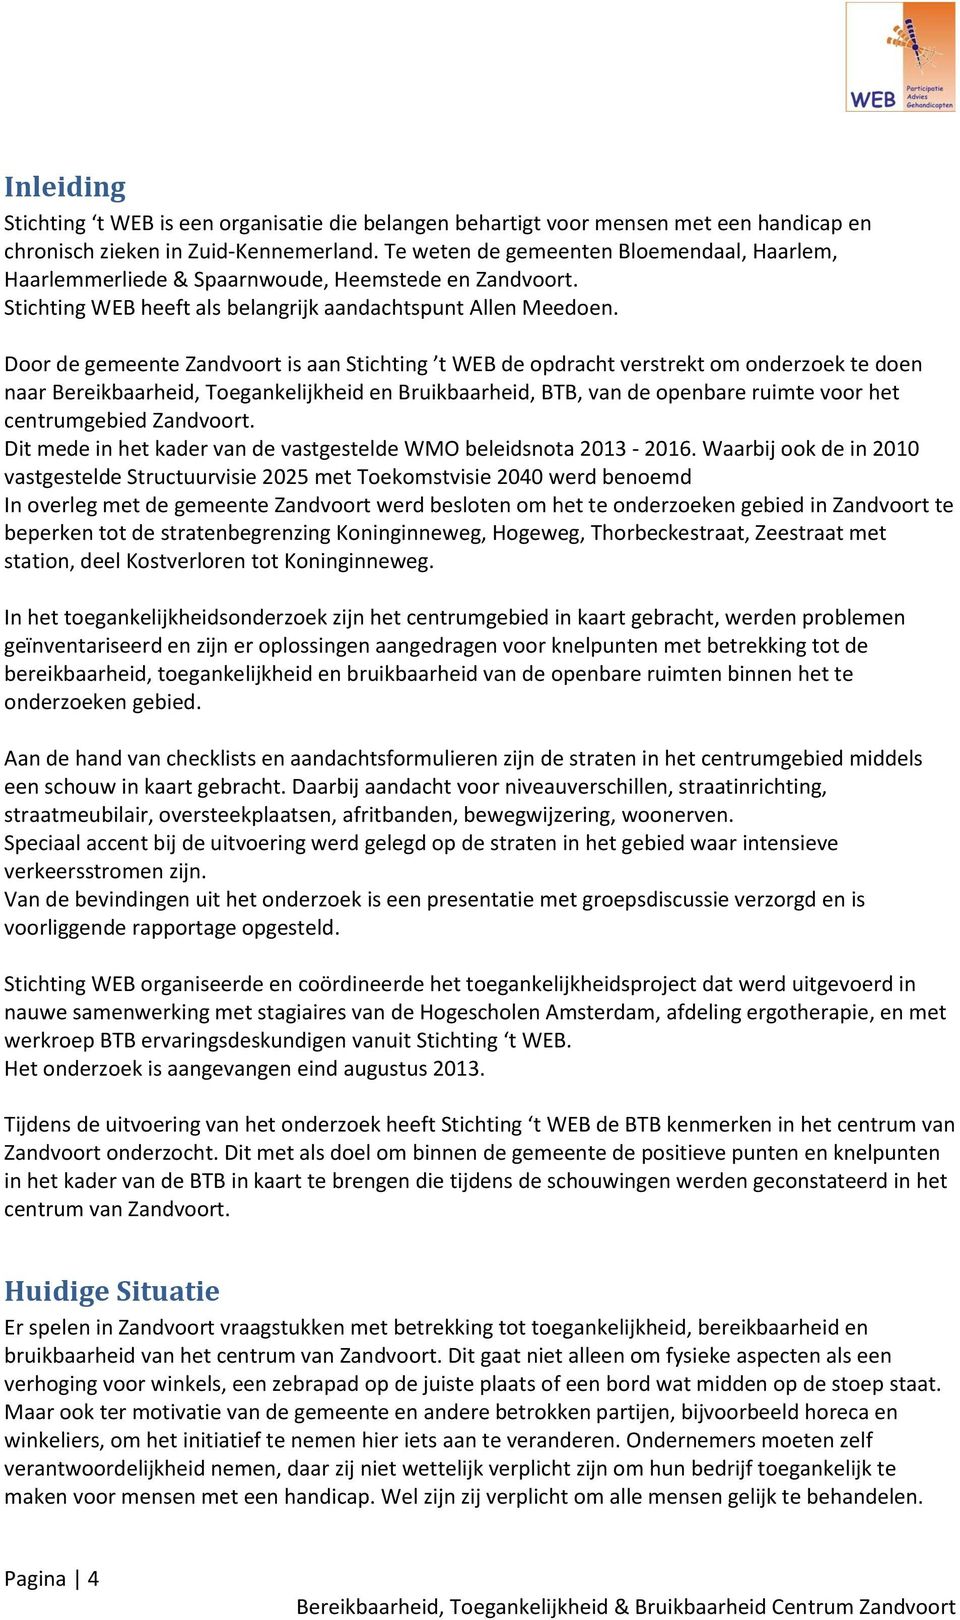 Door de gemeente Zandvoort is aan Stichting t WEB de opdracht verstrekt om onderzoek te doen naar Bereikbaarheid, Toegankelijkheid en Bruikbaarheid, BTB, van de openbare ruimte voor het centrumgebied